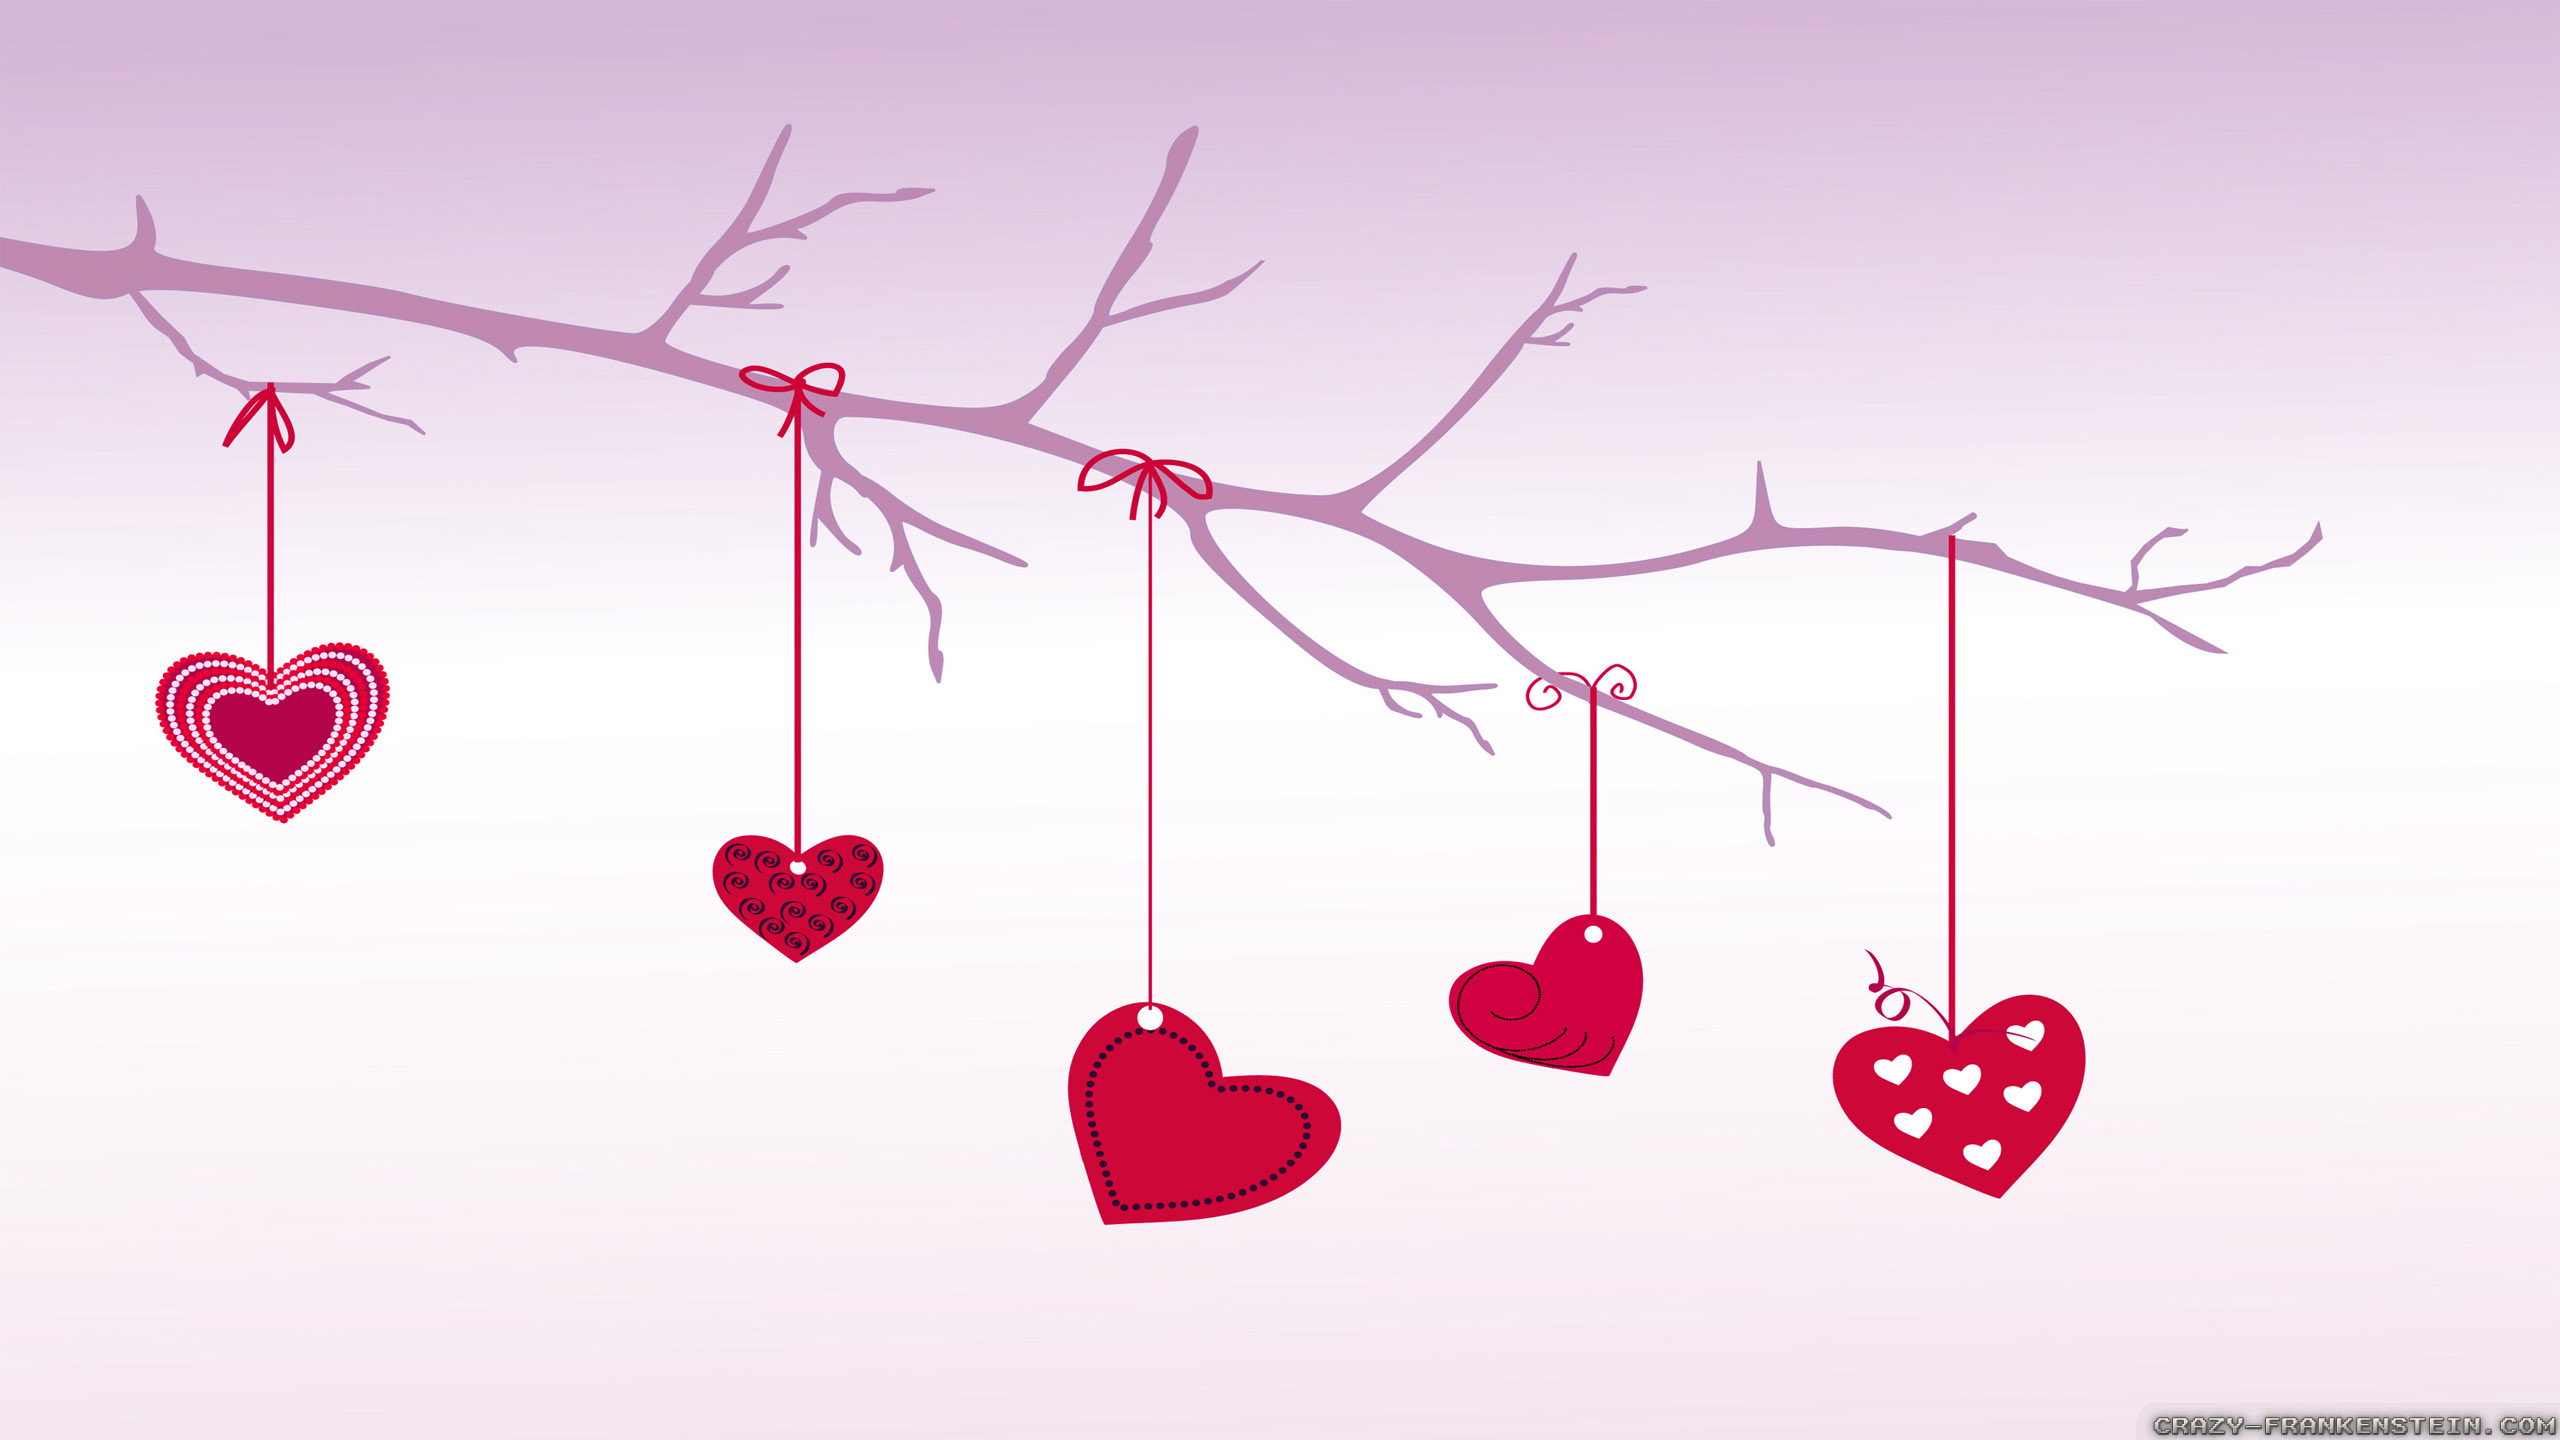 wallpaper herunterladen hd love,herz,rosa,valentinstag,rot,liebe